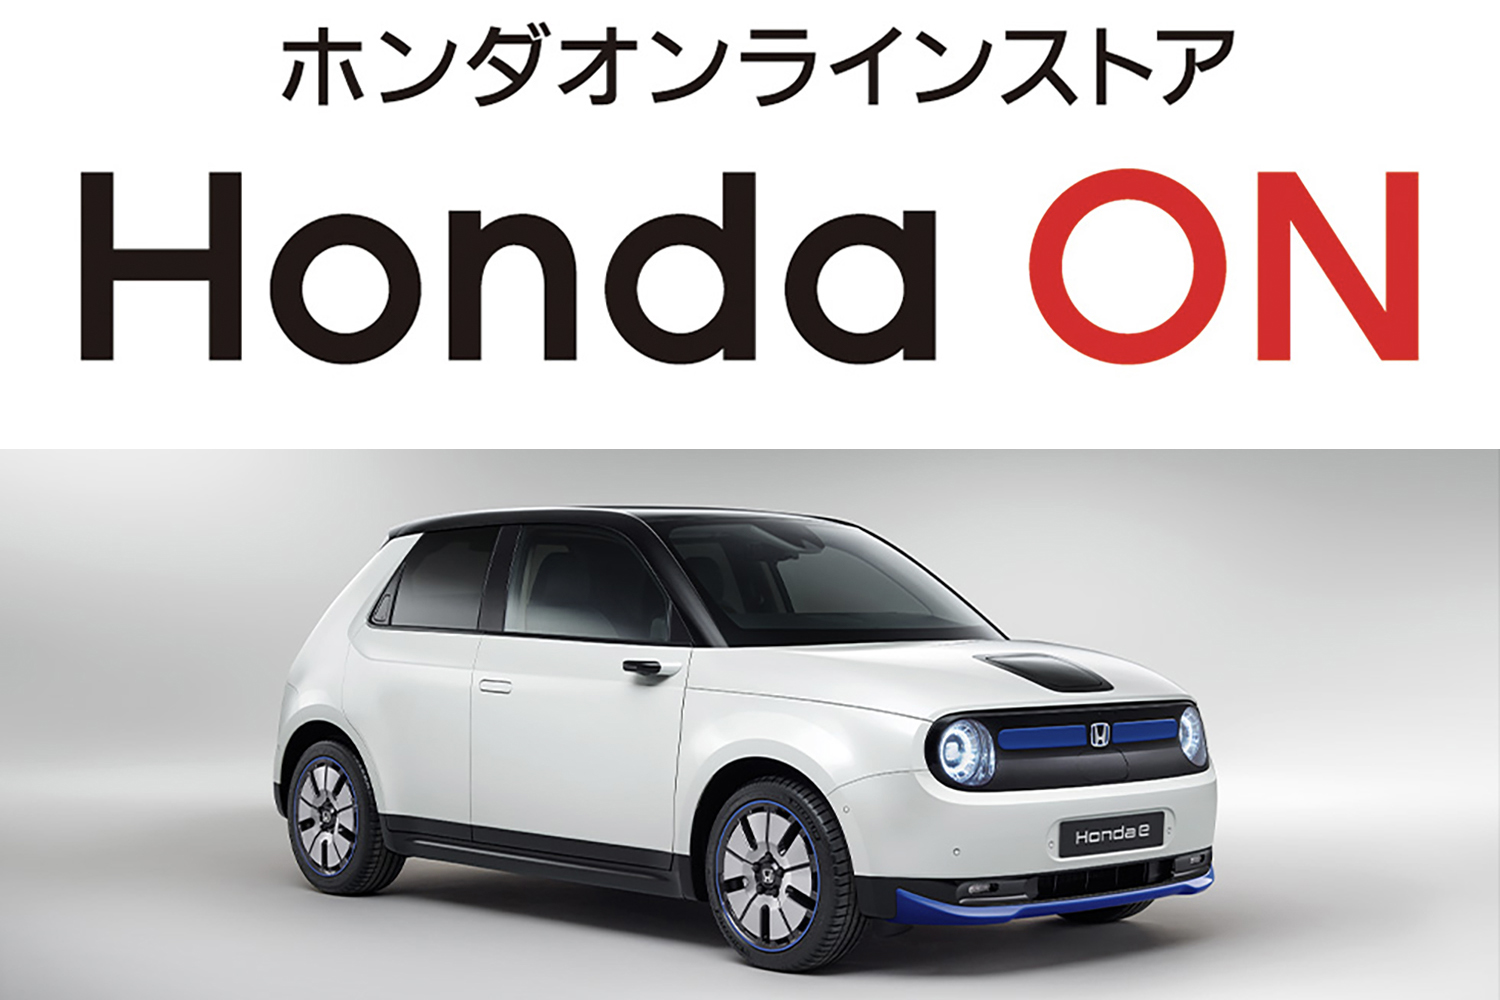 四輪新車オンラインストア「ホンダON」にて「Honda e」の取り扱いをスタート